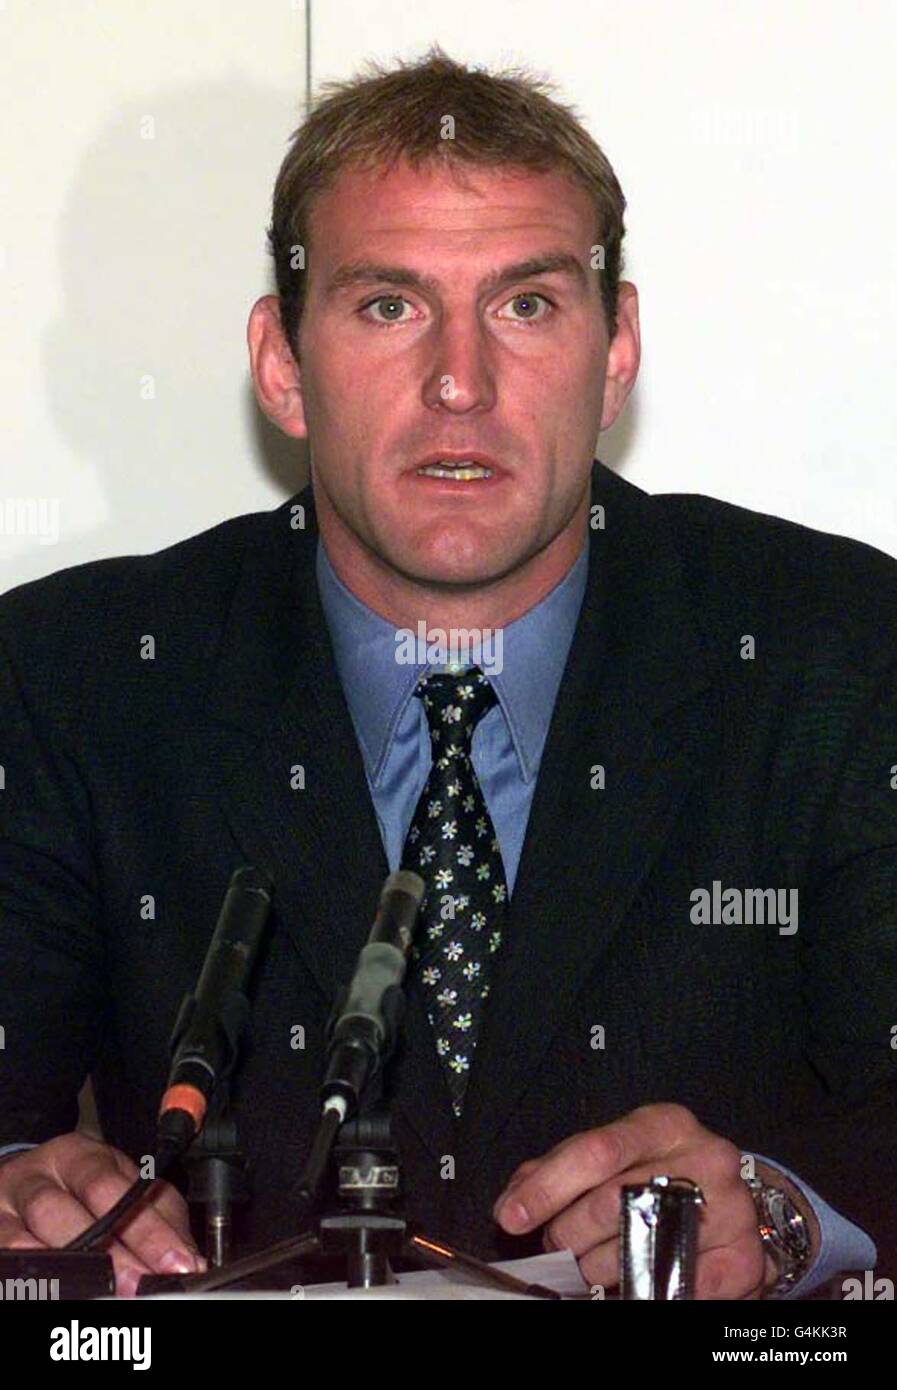 Lawrence Dallaglio sprach während einer Pressekonferenz im Hauptquartier der Rugby Football Union in Twickenham, London, um zu erklären, warum er die England Rugby Union-Kapitänsschaft niedergelegt hat, obwohl er illegale Drogenvorwürfe gegen ihn kategorisch verneinte. Stockfoto